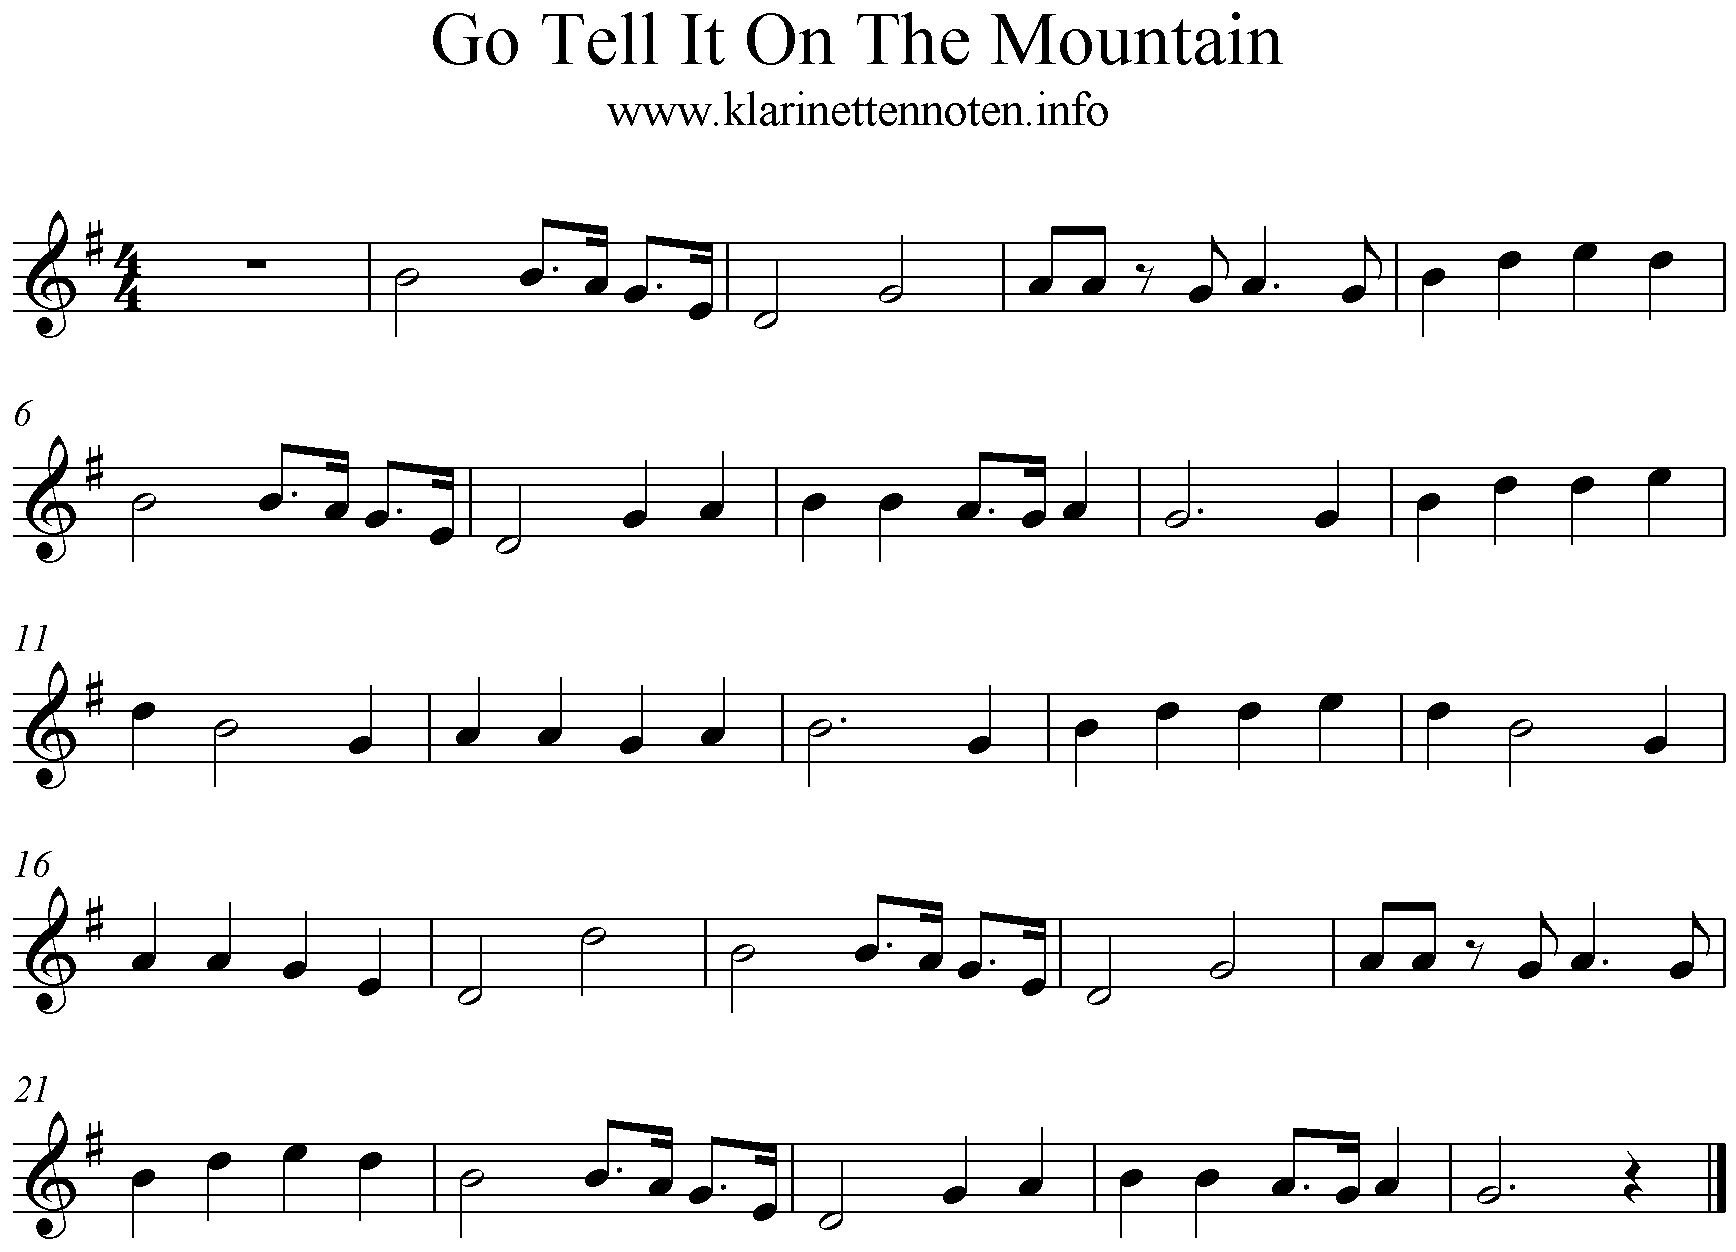 Go Tell it To The Mountain- Klarinettennoten, G-Dur, Clarinet freesheetmusic